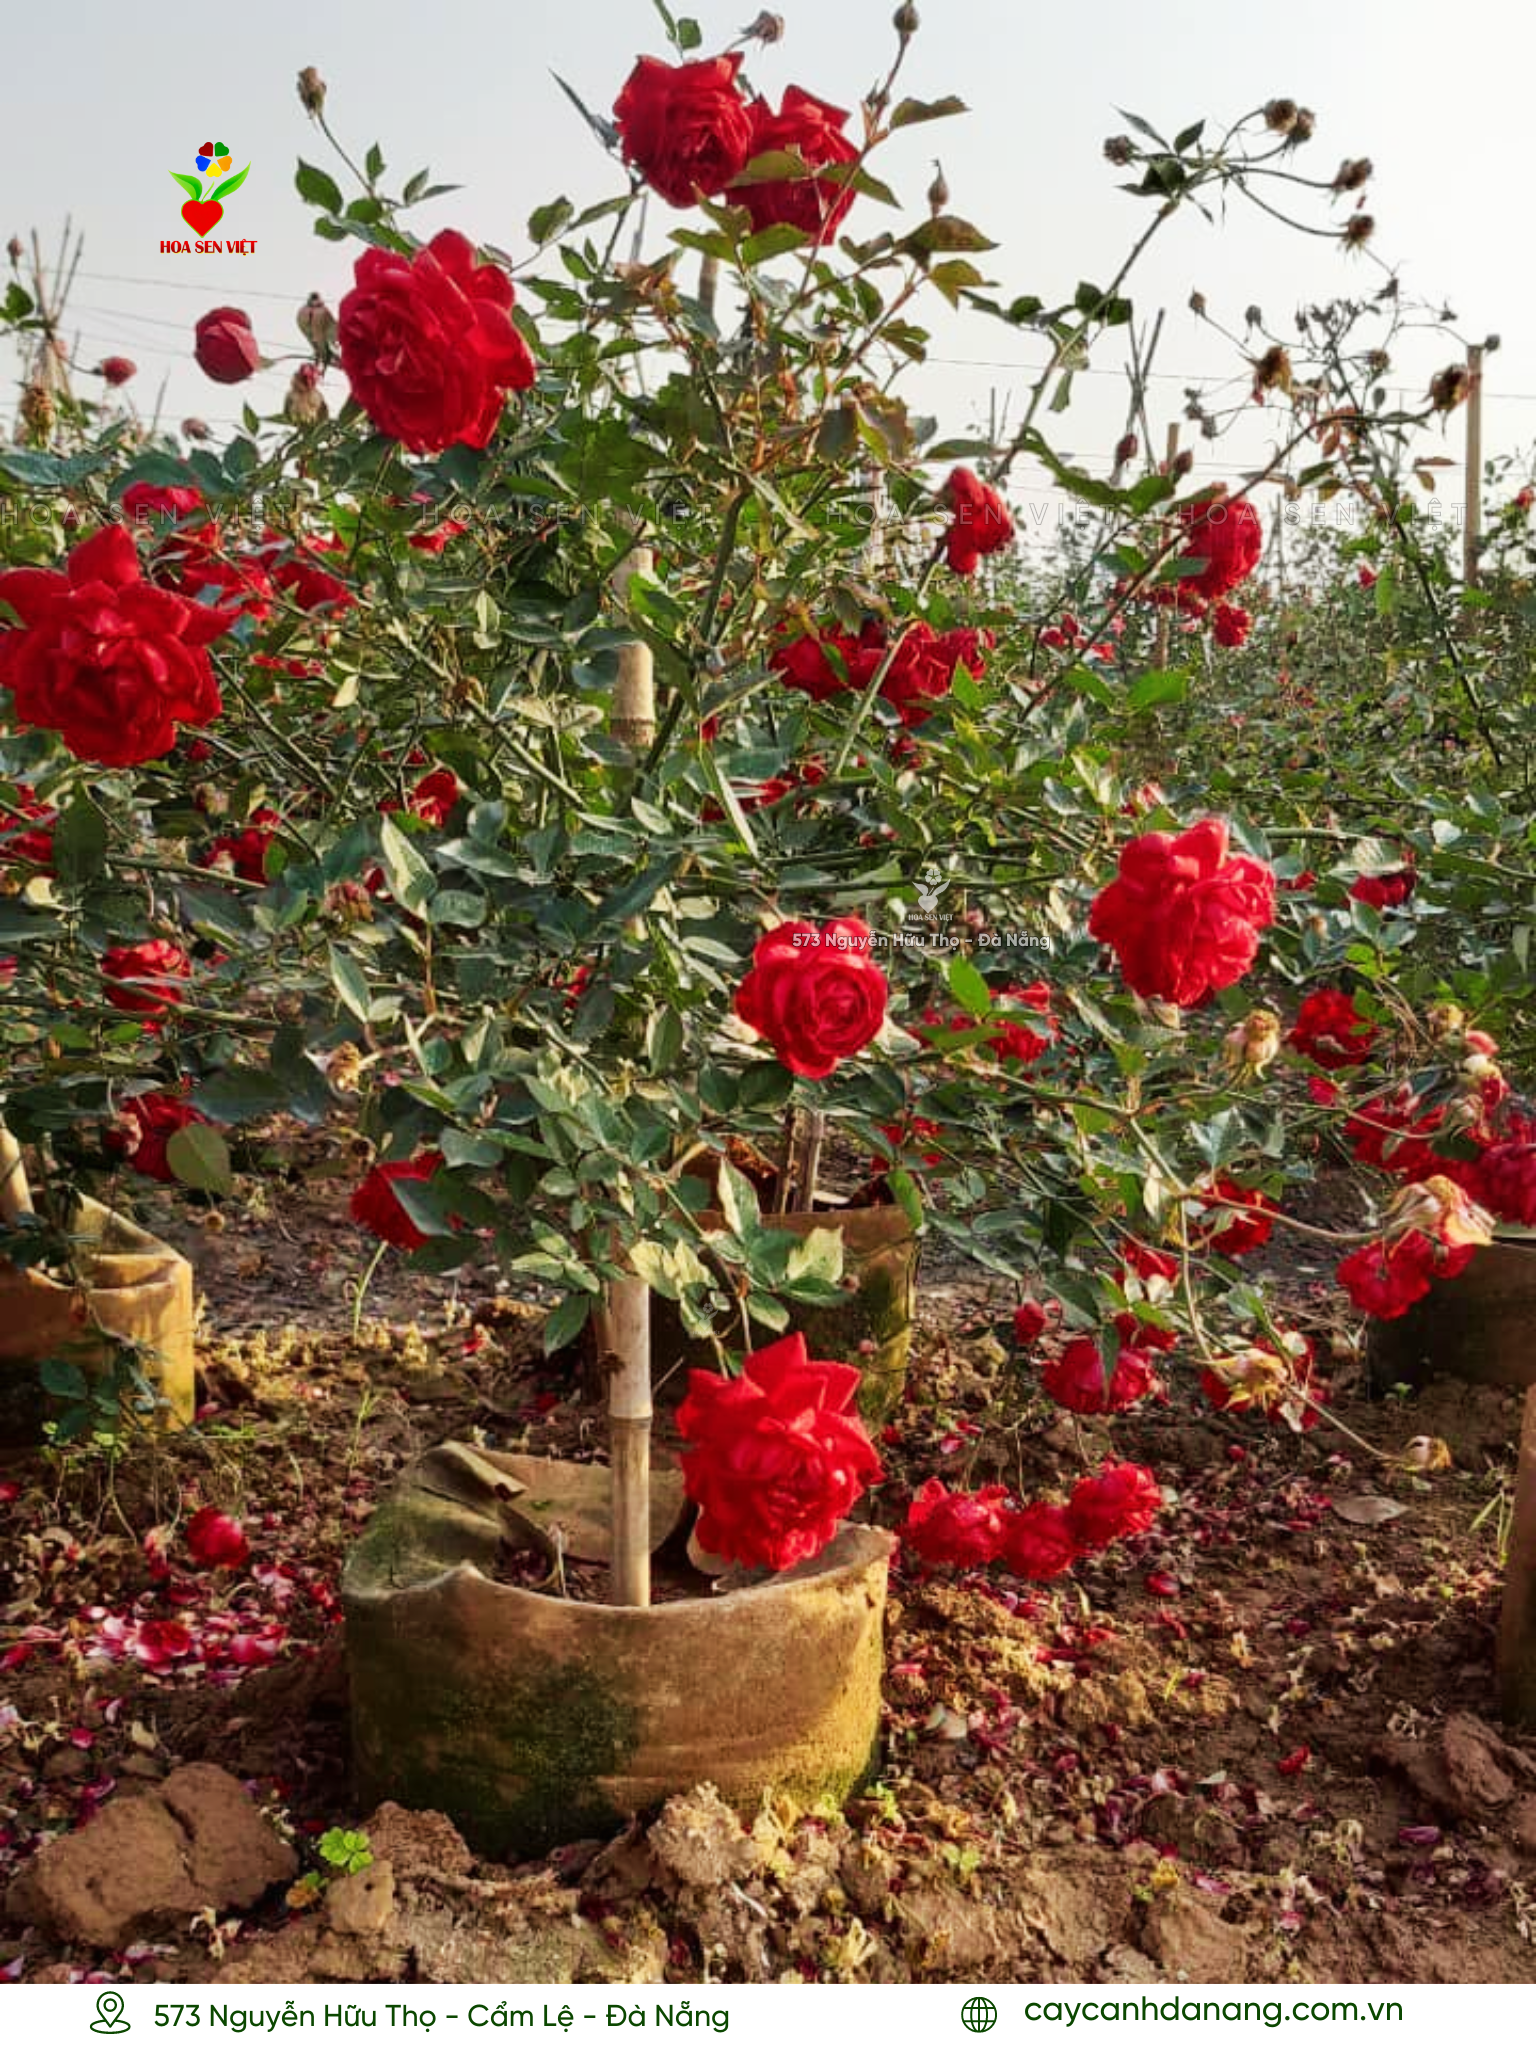 Hoa hồng cổ rất hiếm tại Đà Nẵng